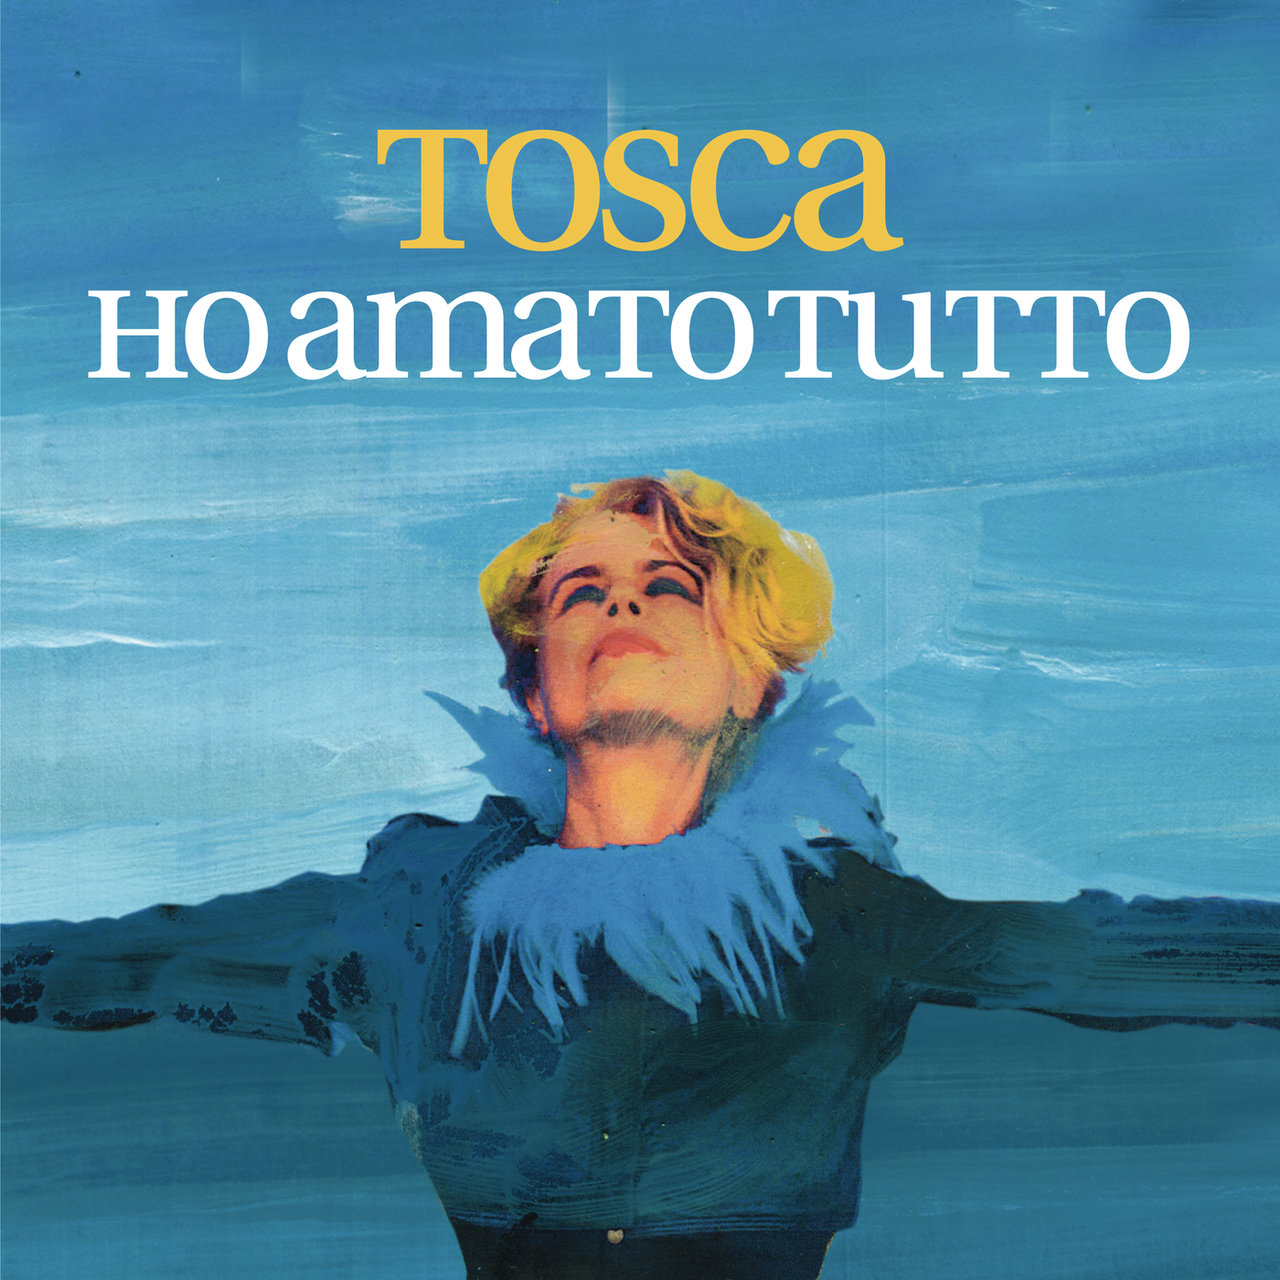 Tosca — Ho amato tutto cover artwork